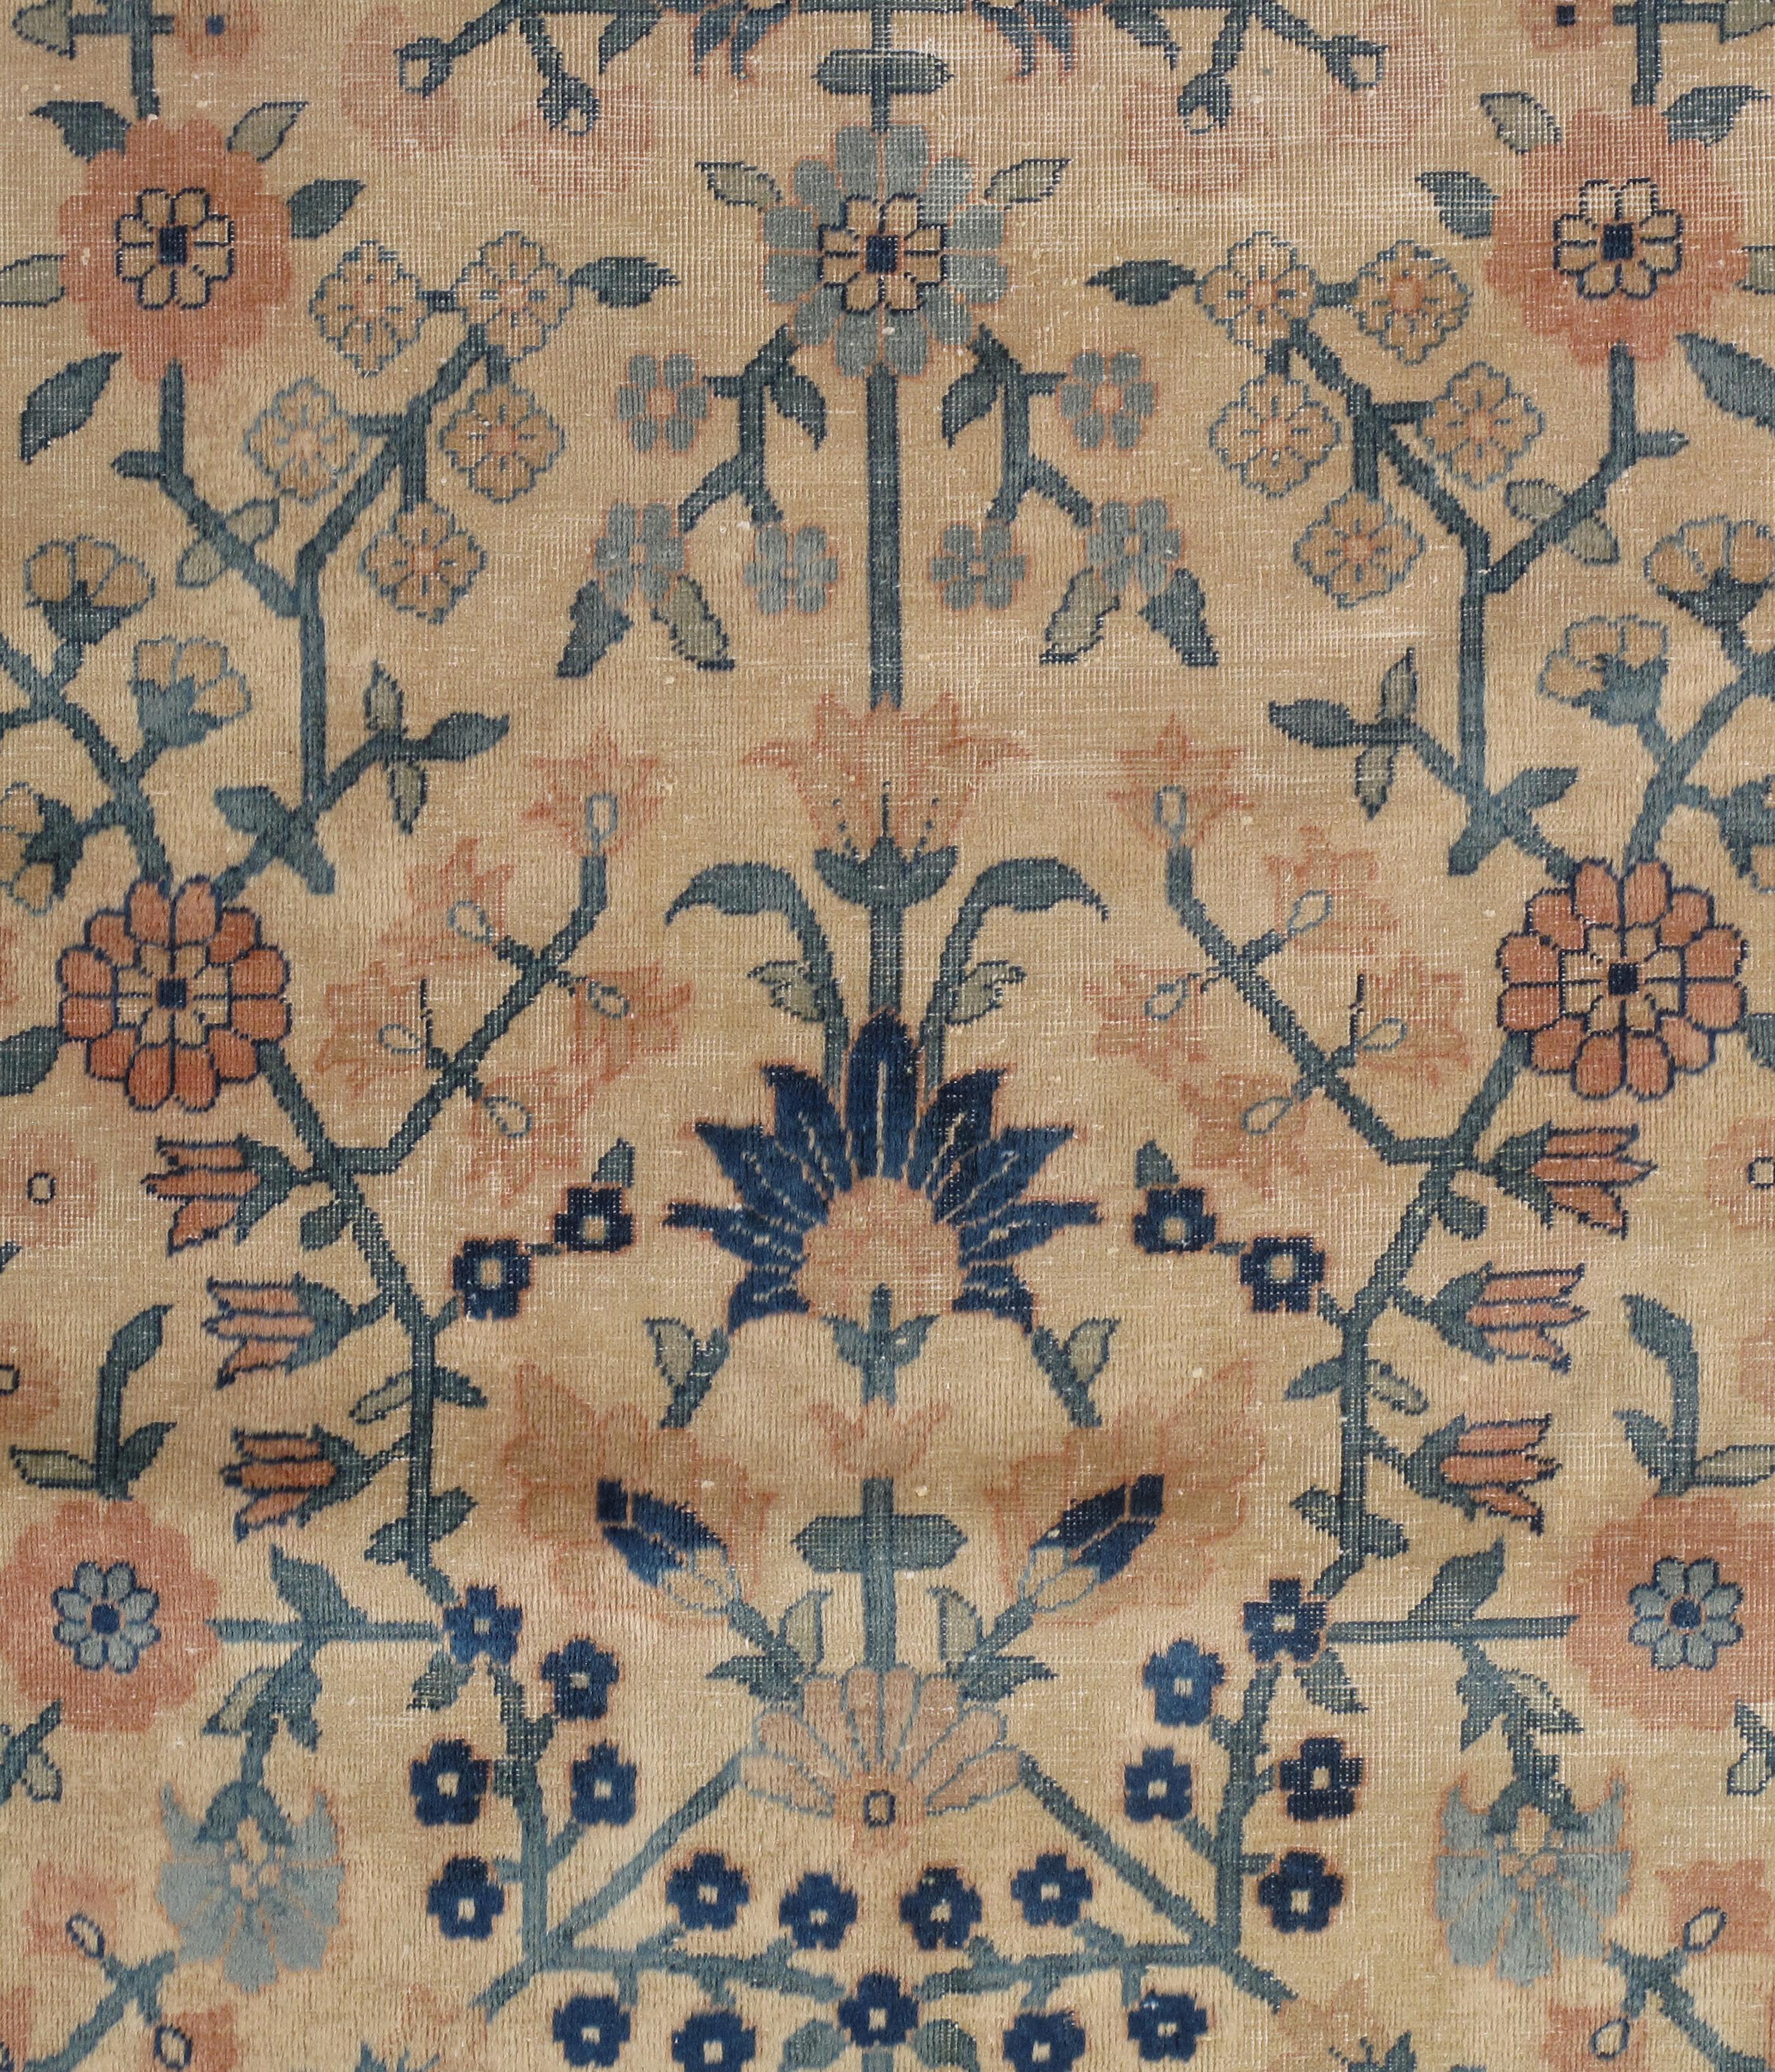 Indien Tapis oriental indien antique d'Amritsar fait main, motif de motifs bleus, taupes et crèmes sur toute la surface en vente